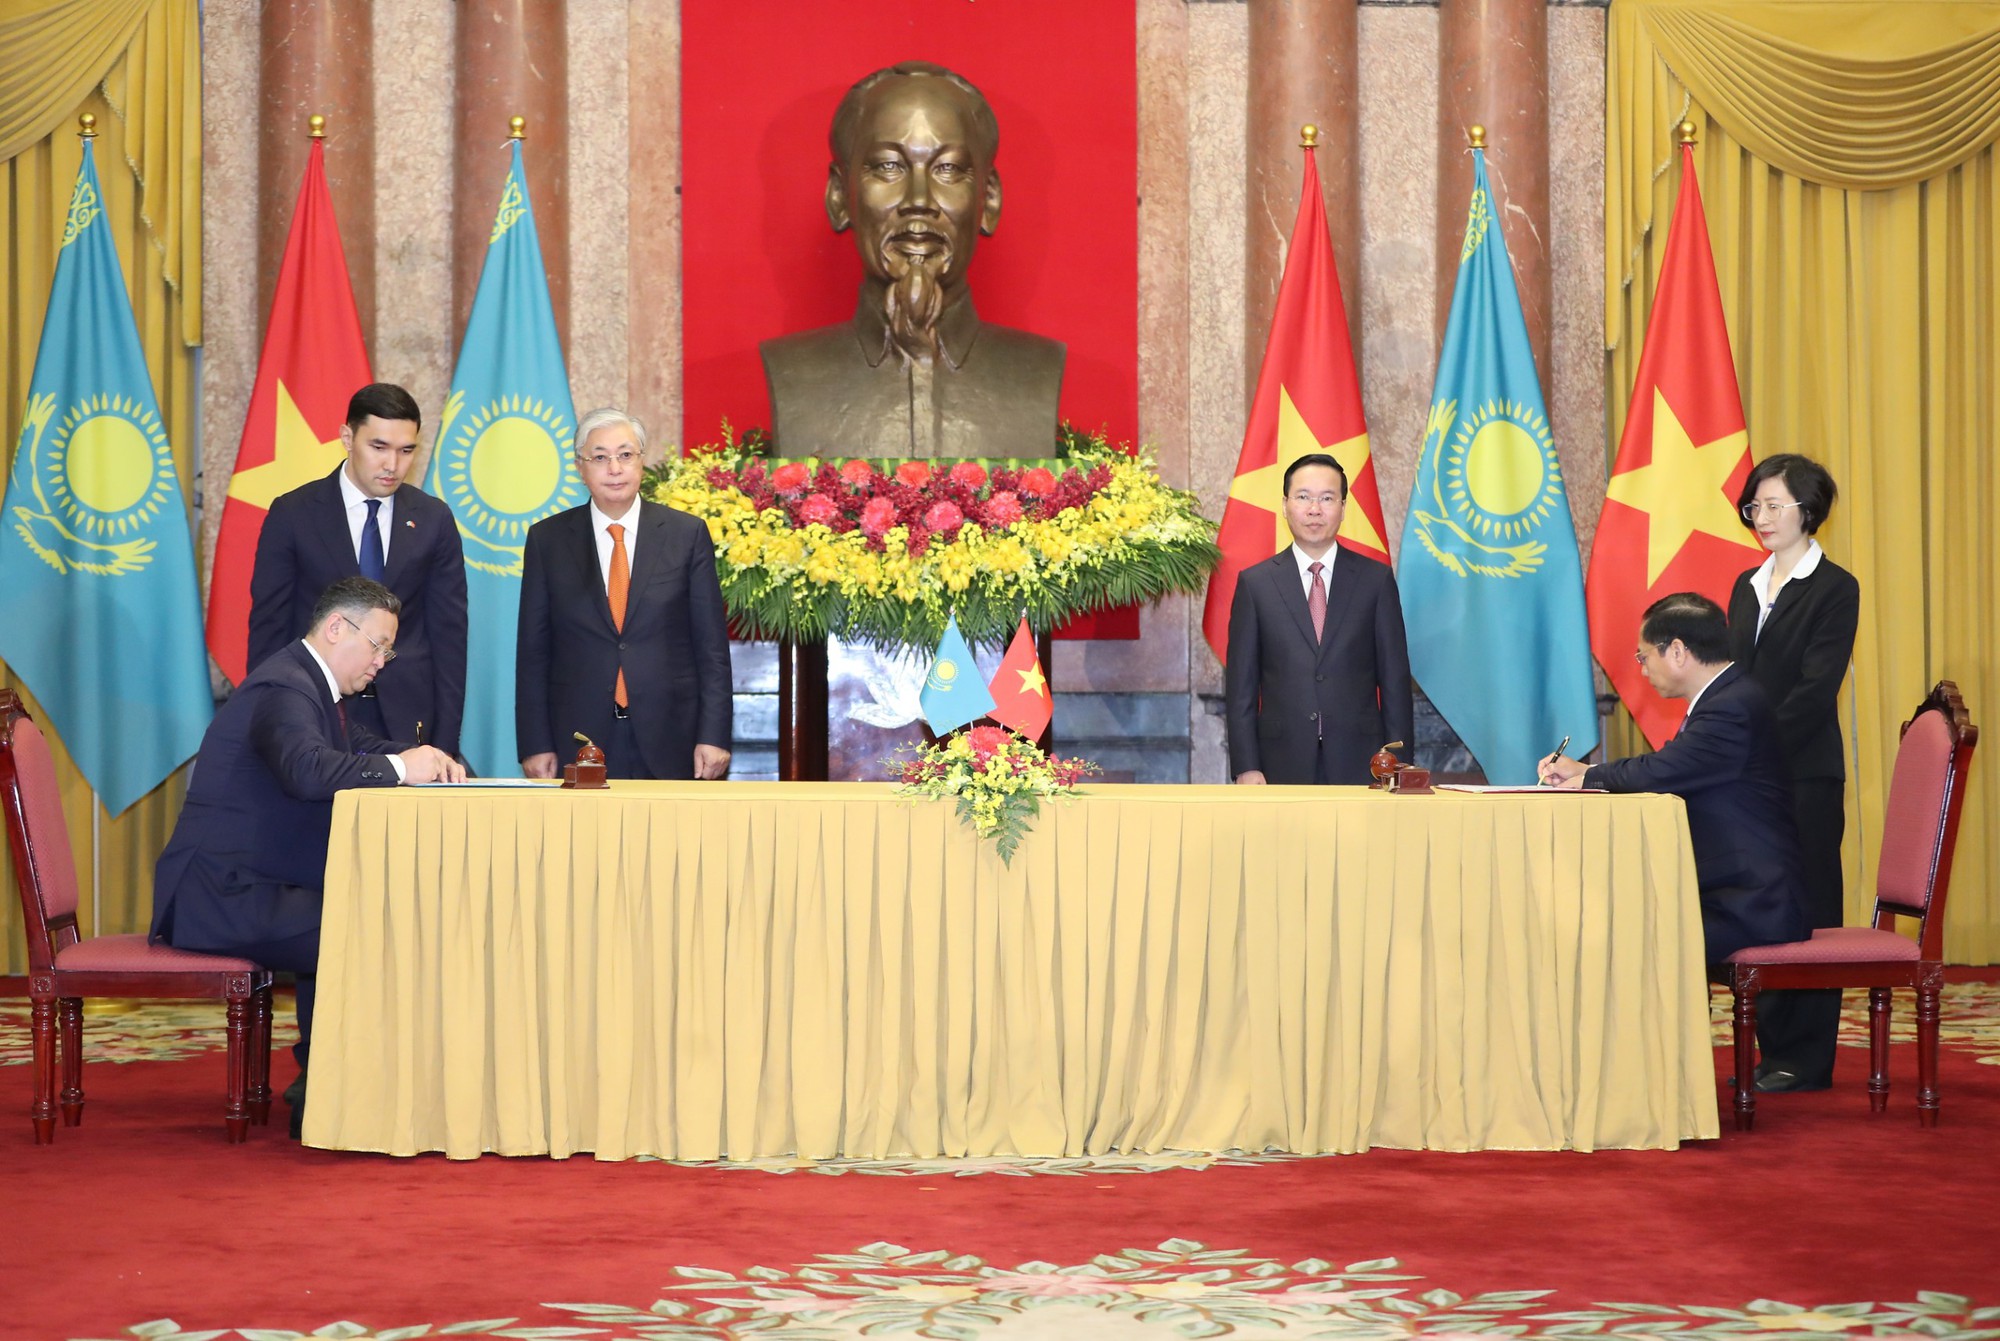 Việt Nam và Kazakhstan ký kết hiệp định miễn thị thực song phương cho công dân mang hộ chiếu phổ thông